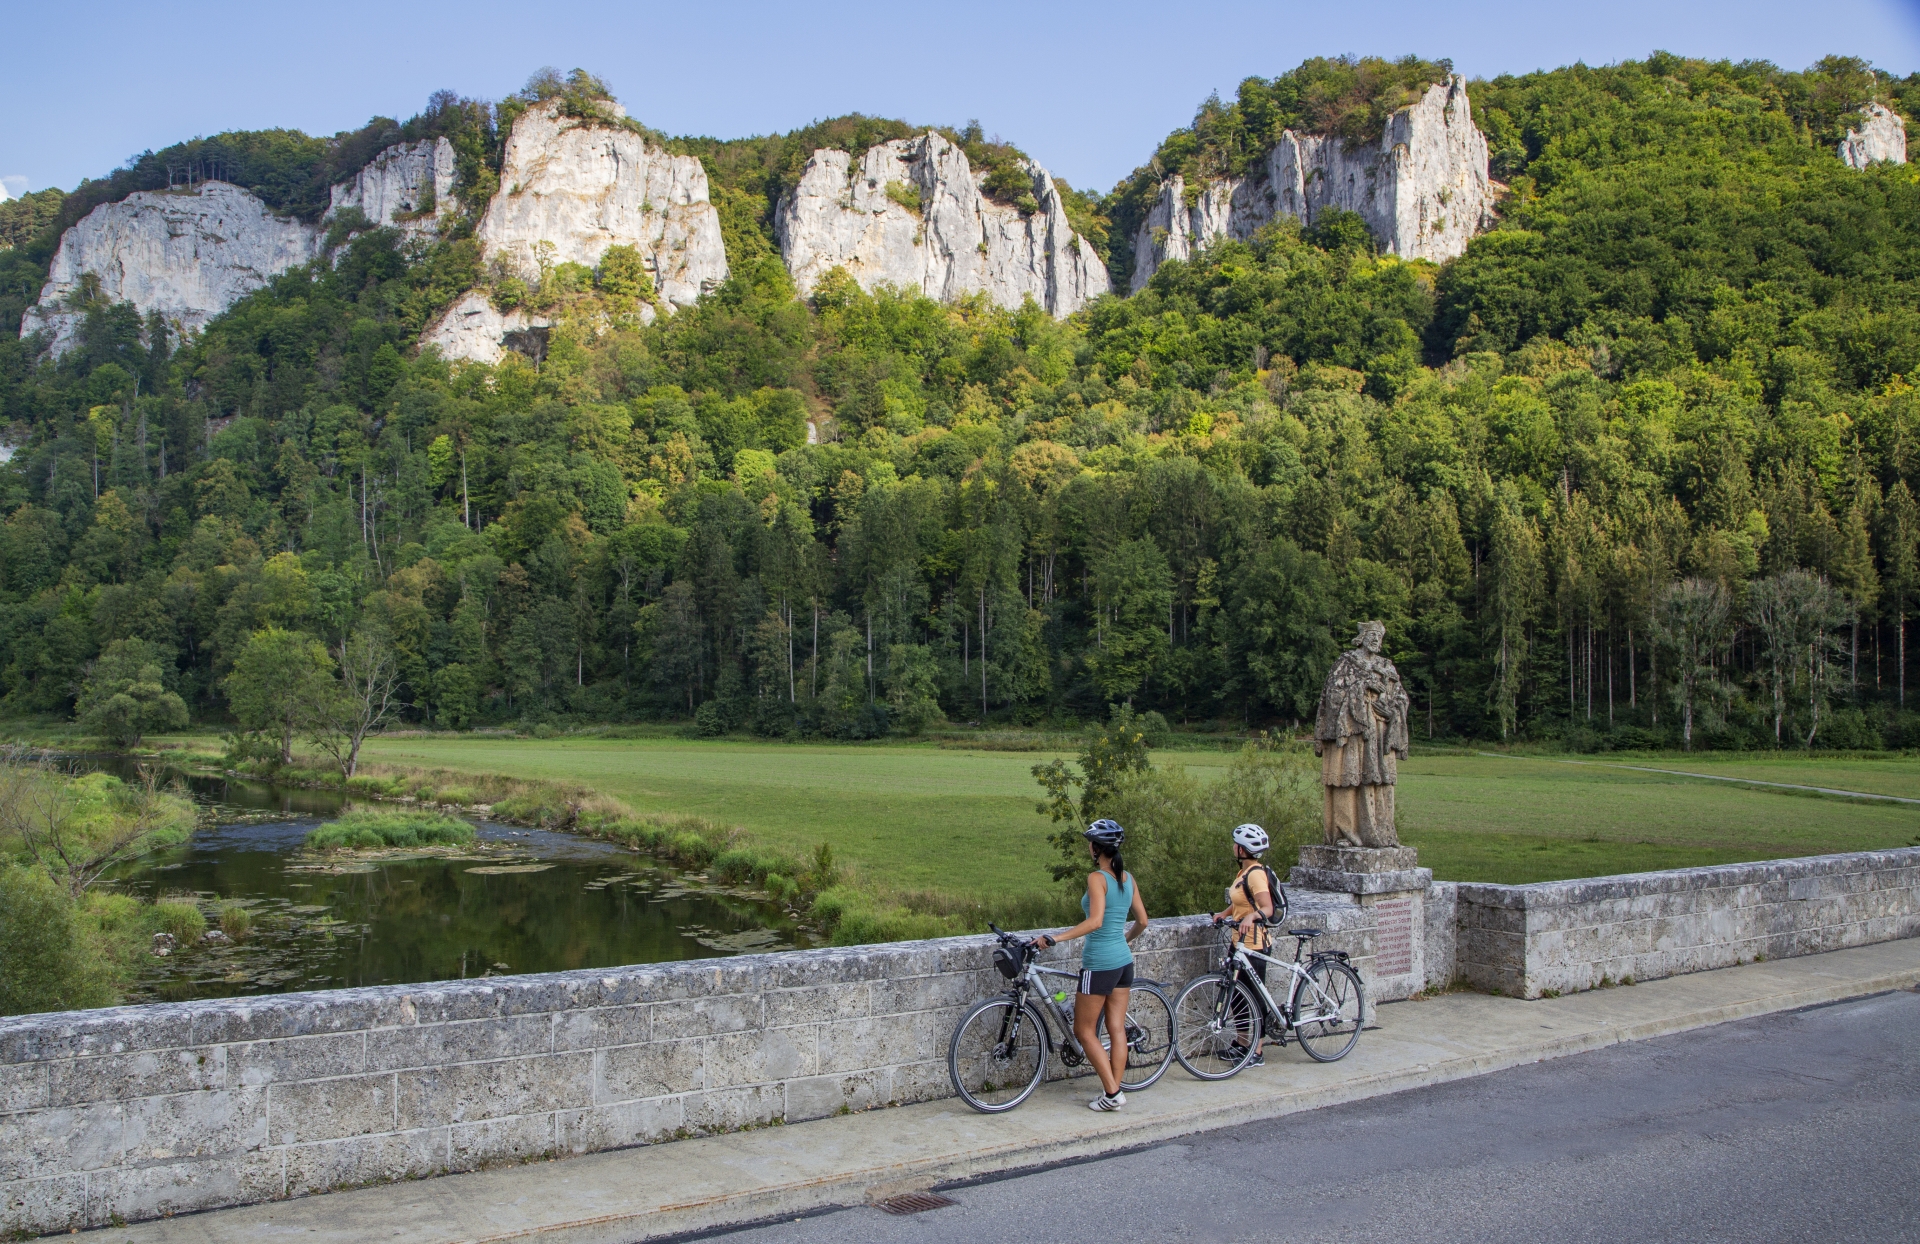 Bild von zwei Radfahrerinnen, die einer Steinmauer stehen und auf die Donau blicken im Hintergrund sind Felsen, Bäume und Wiese zu sehen